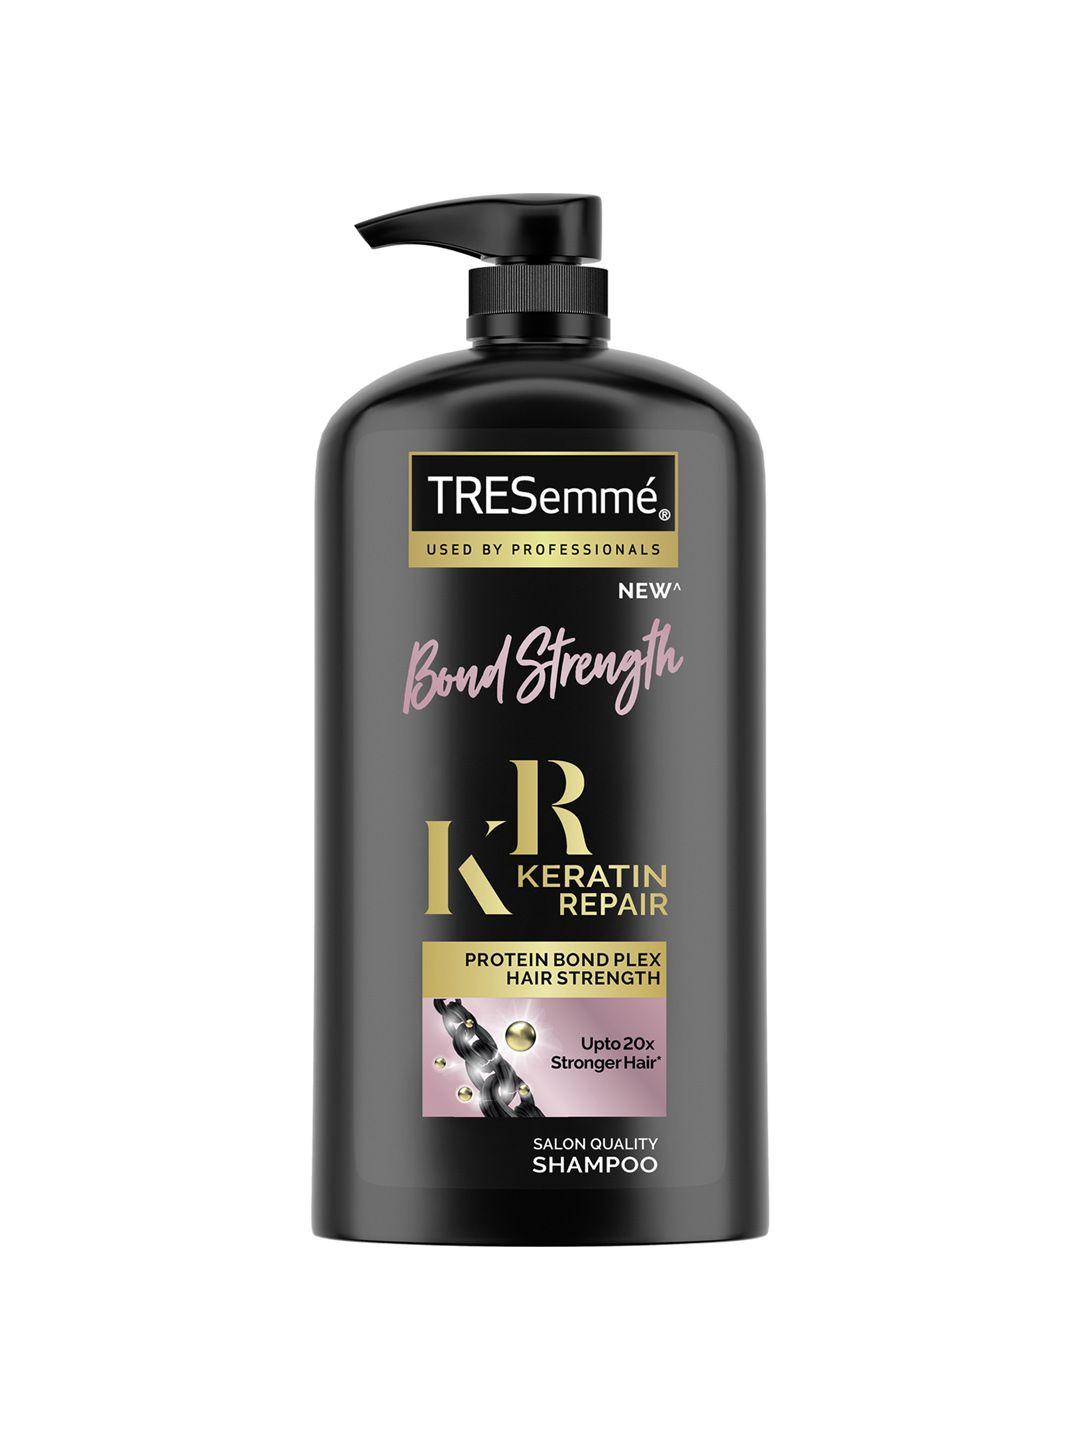 tresemme bond strength keratin repair protein bond plex shampoo - 1l